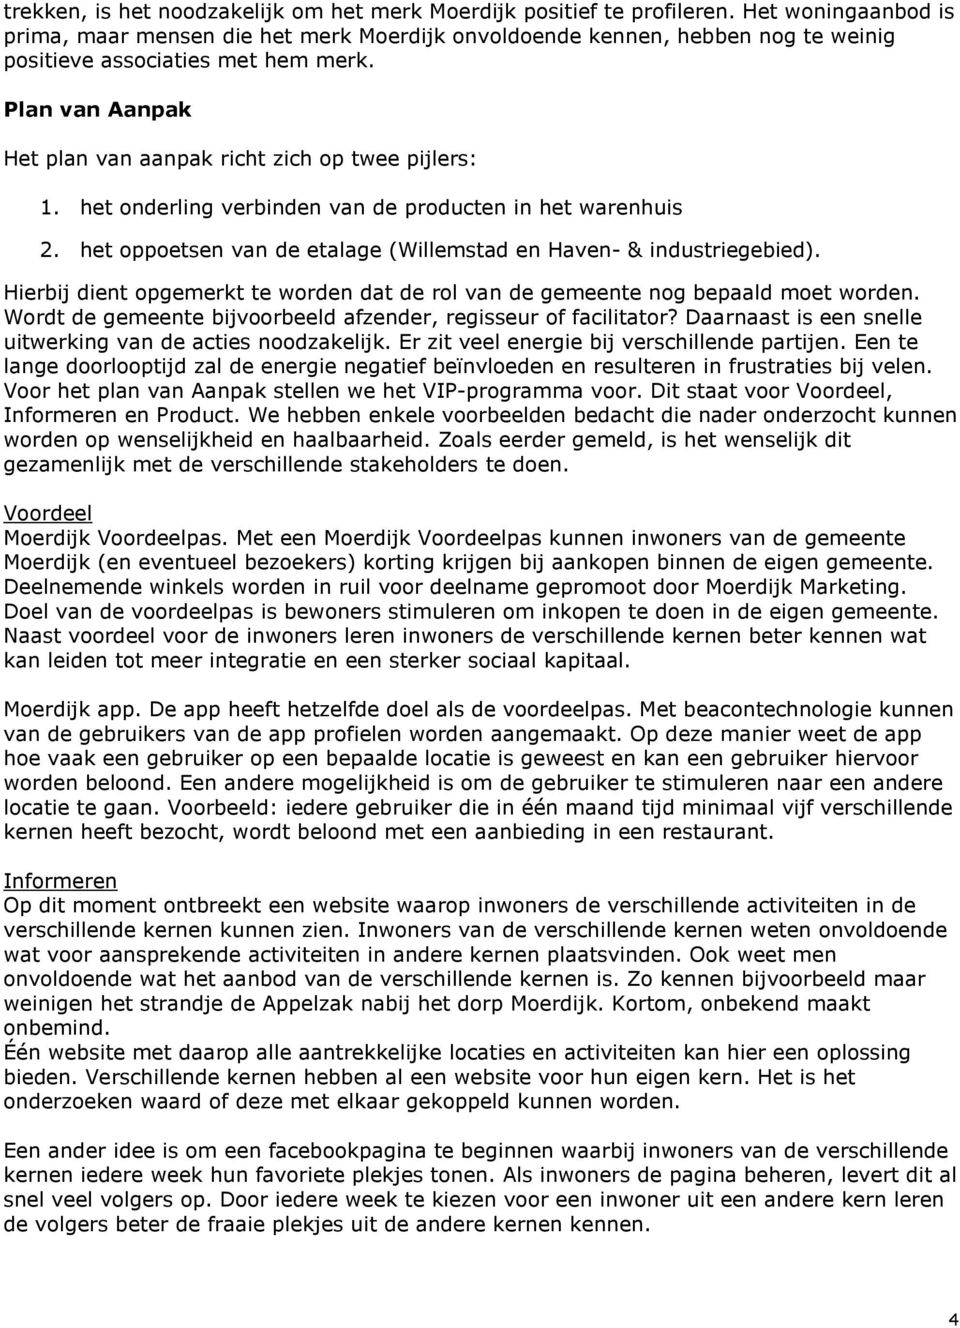 Plan van Aanpak Het plan van aanpak richt zich op twee pijlers: 1. het onderling verbinden van de producten in het warenhuis 2. het oppoetsen van de etalage (Willemstad en Haven- & industriegebied).